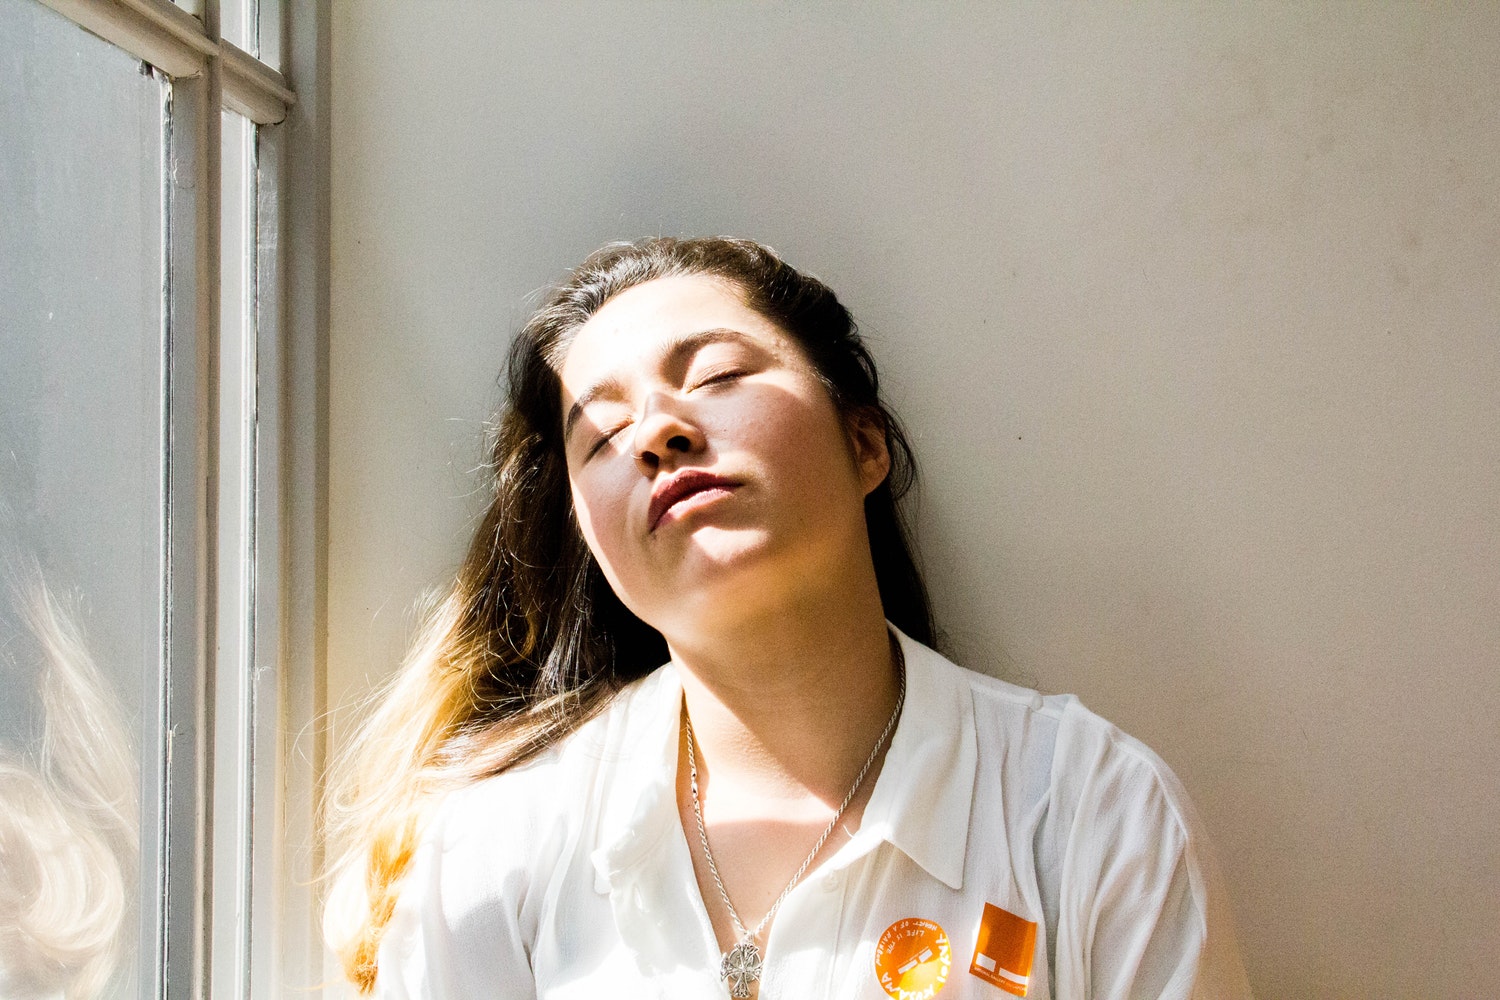         Khi ốm, ngủ ít khiến cơ thể mất nhiều năng lượng (ảnh minh họa)  